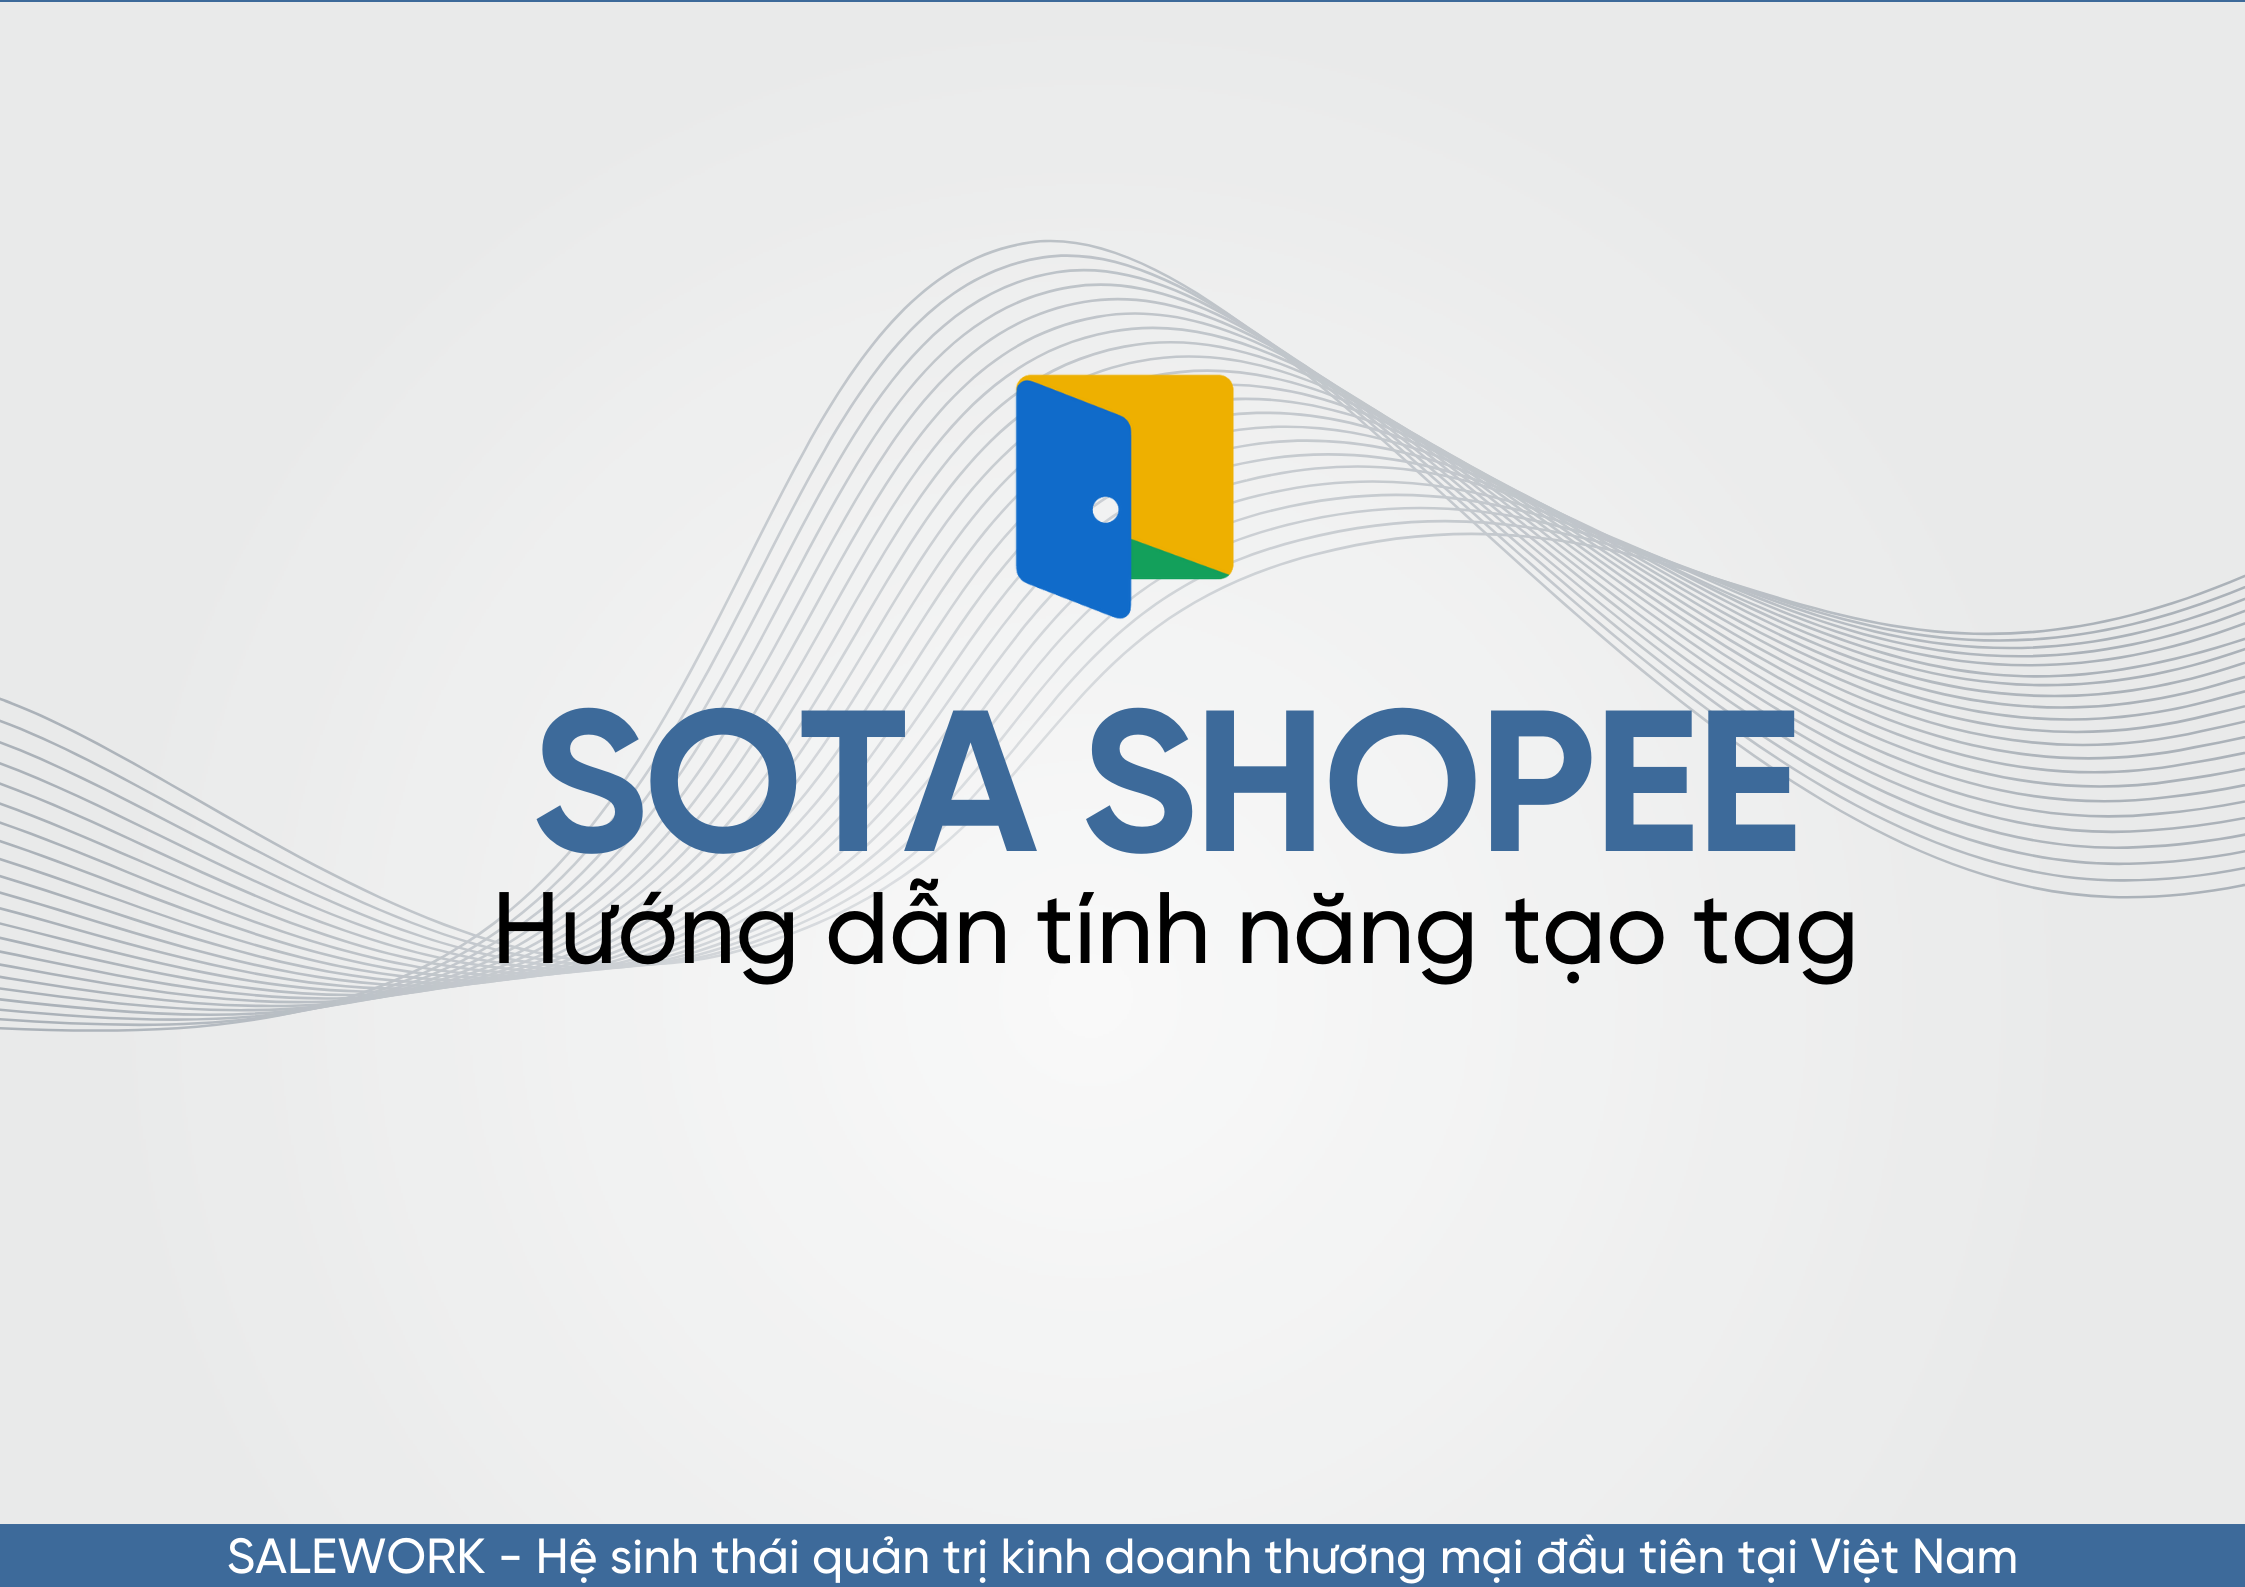 Hướng dẫn tính năng tạo tag trên SOTA Shopee - 88